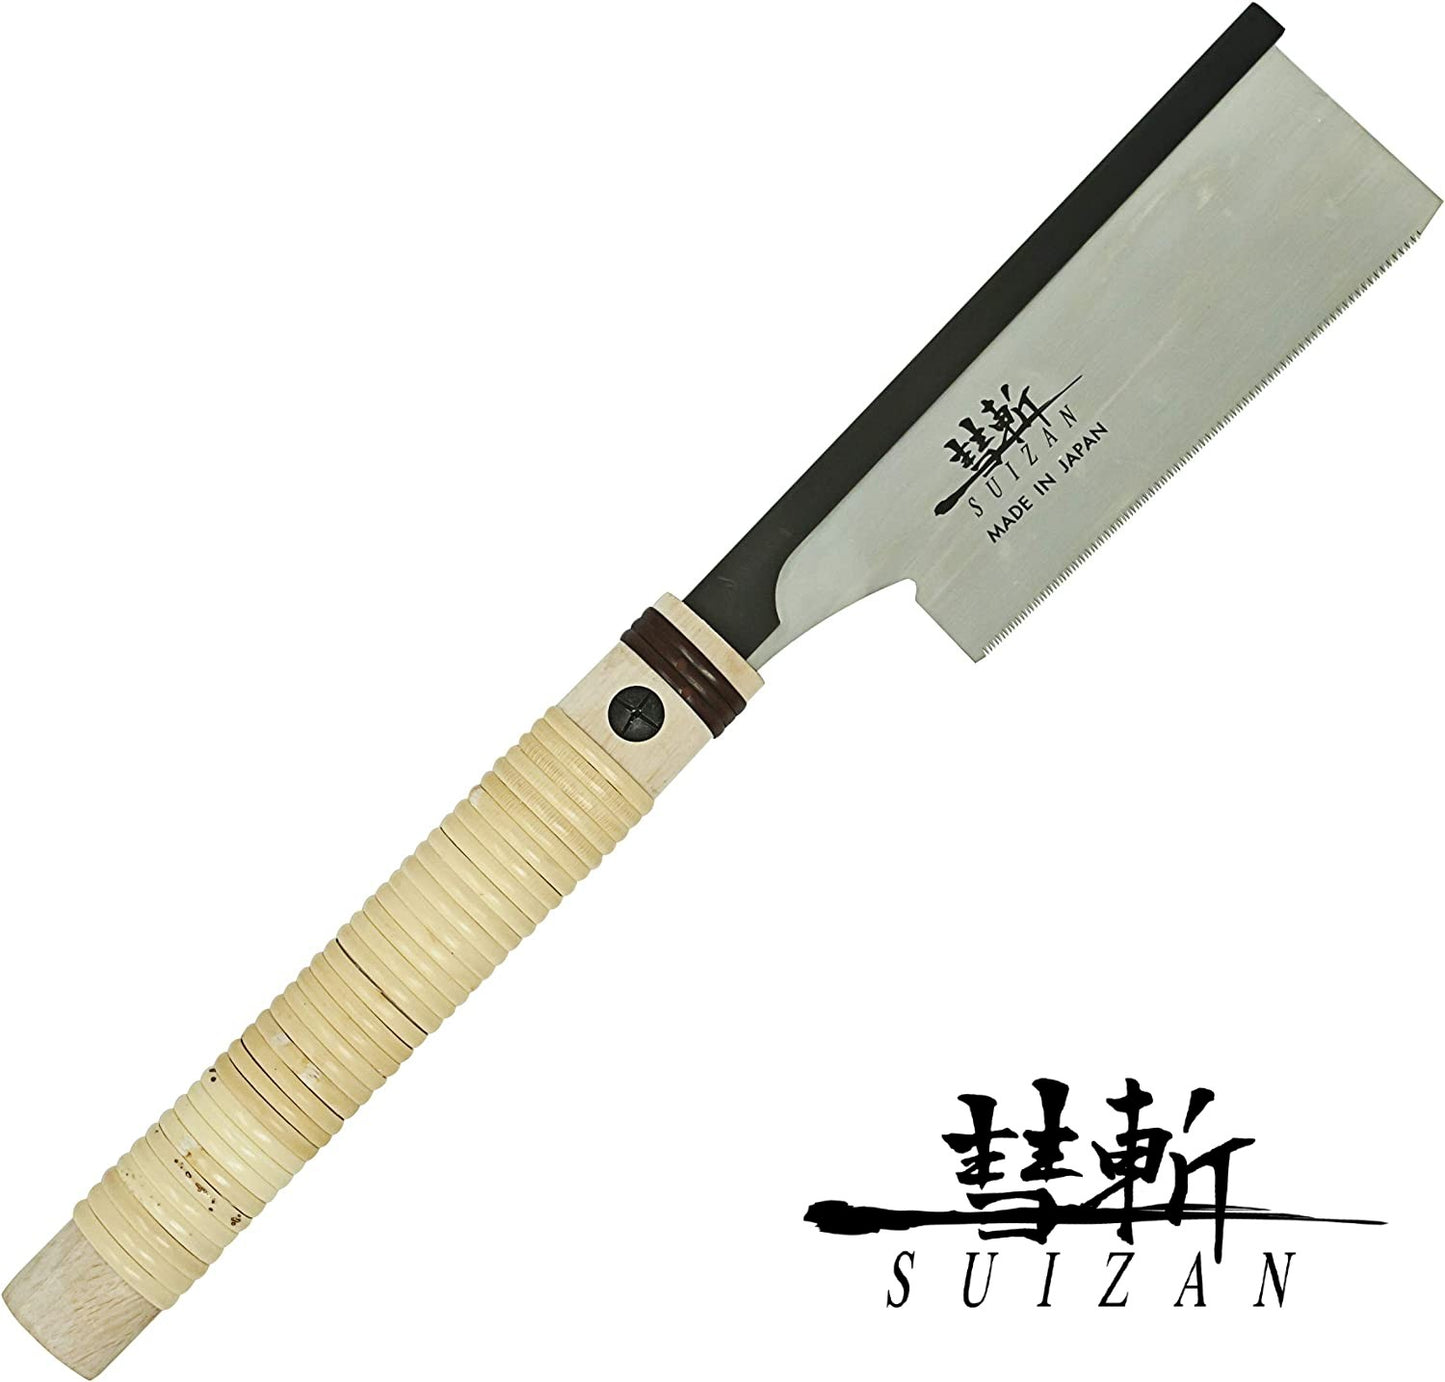 SUIZAN スイザン 胴付鋸 150mm 胴つきのこぎり 替刃式 木工用